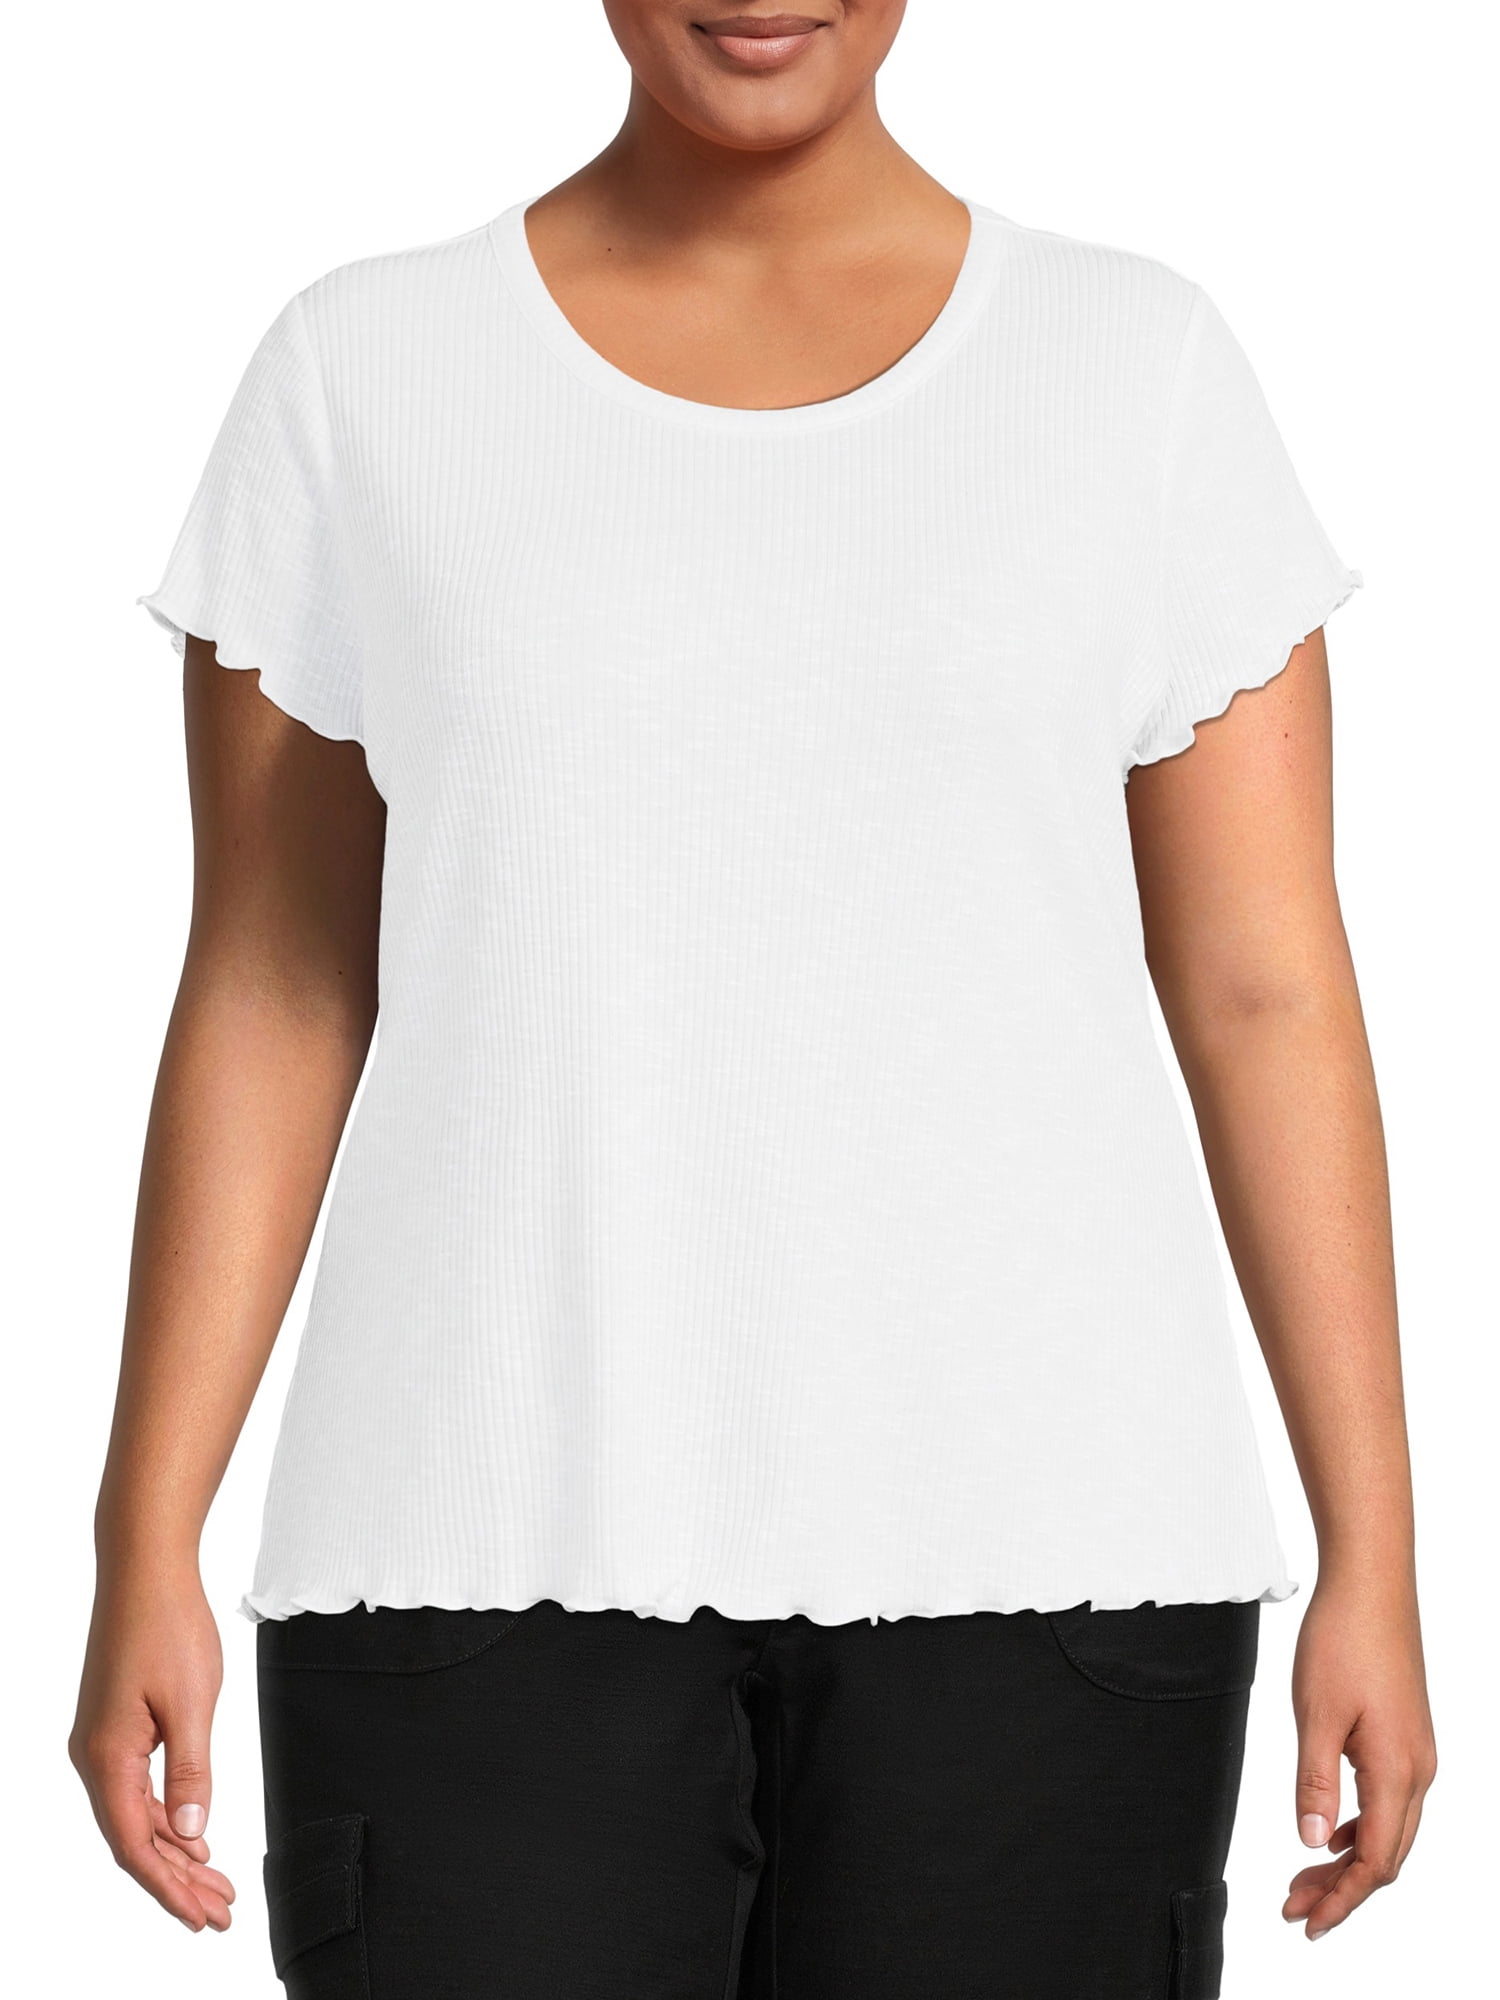 Terra & Sky Women's Plus Size Lettuce Edge Short Sleeve T-Shirt ...